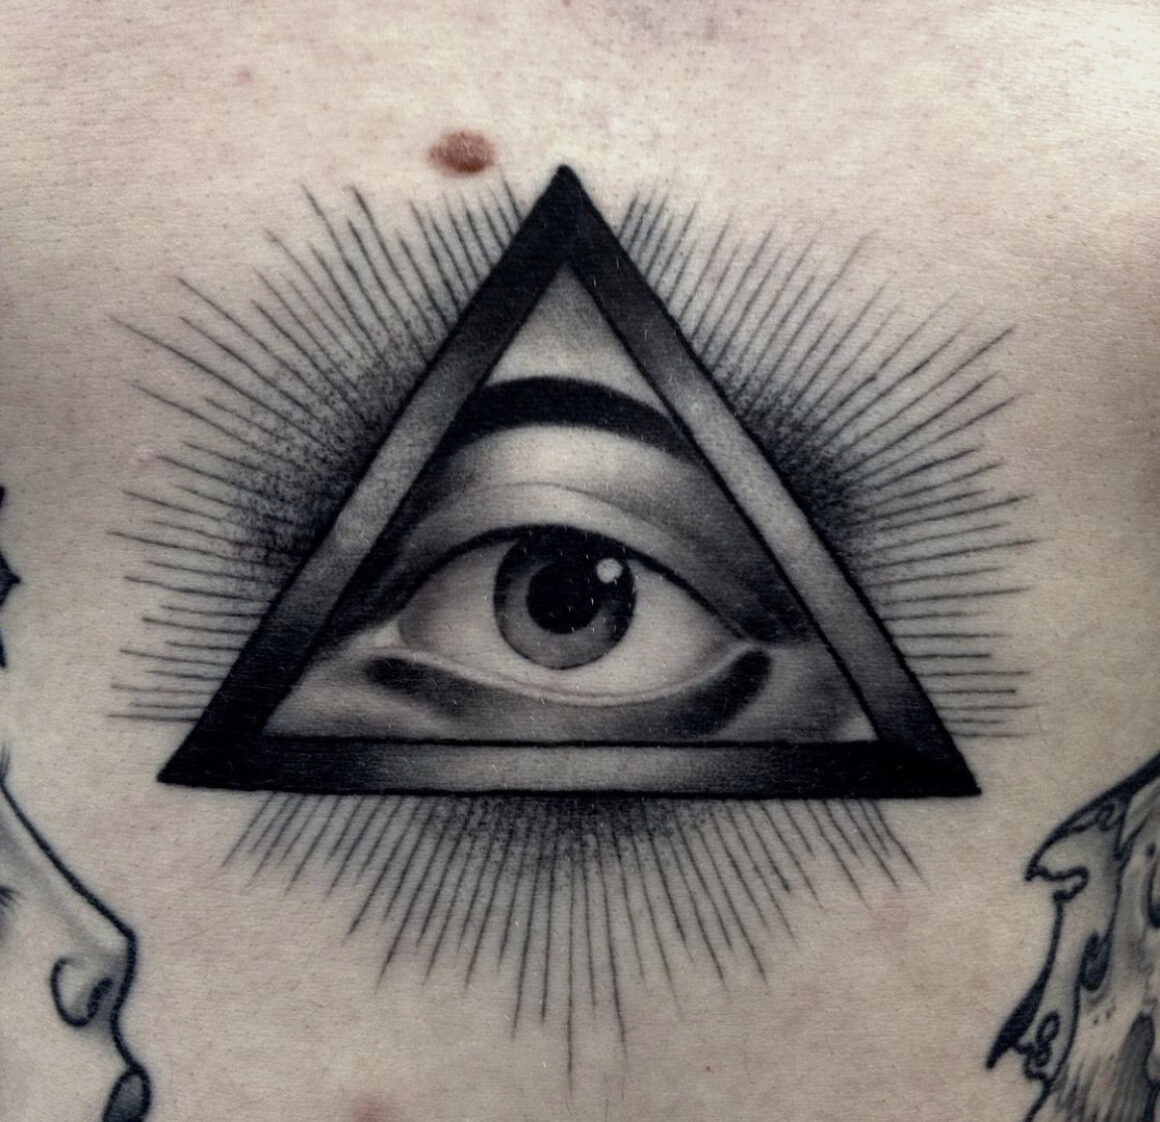 Tattoo by Xam, @xamthespaniard